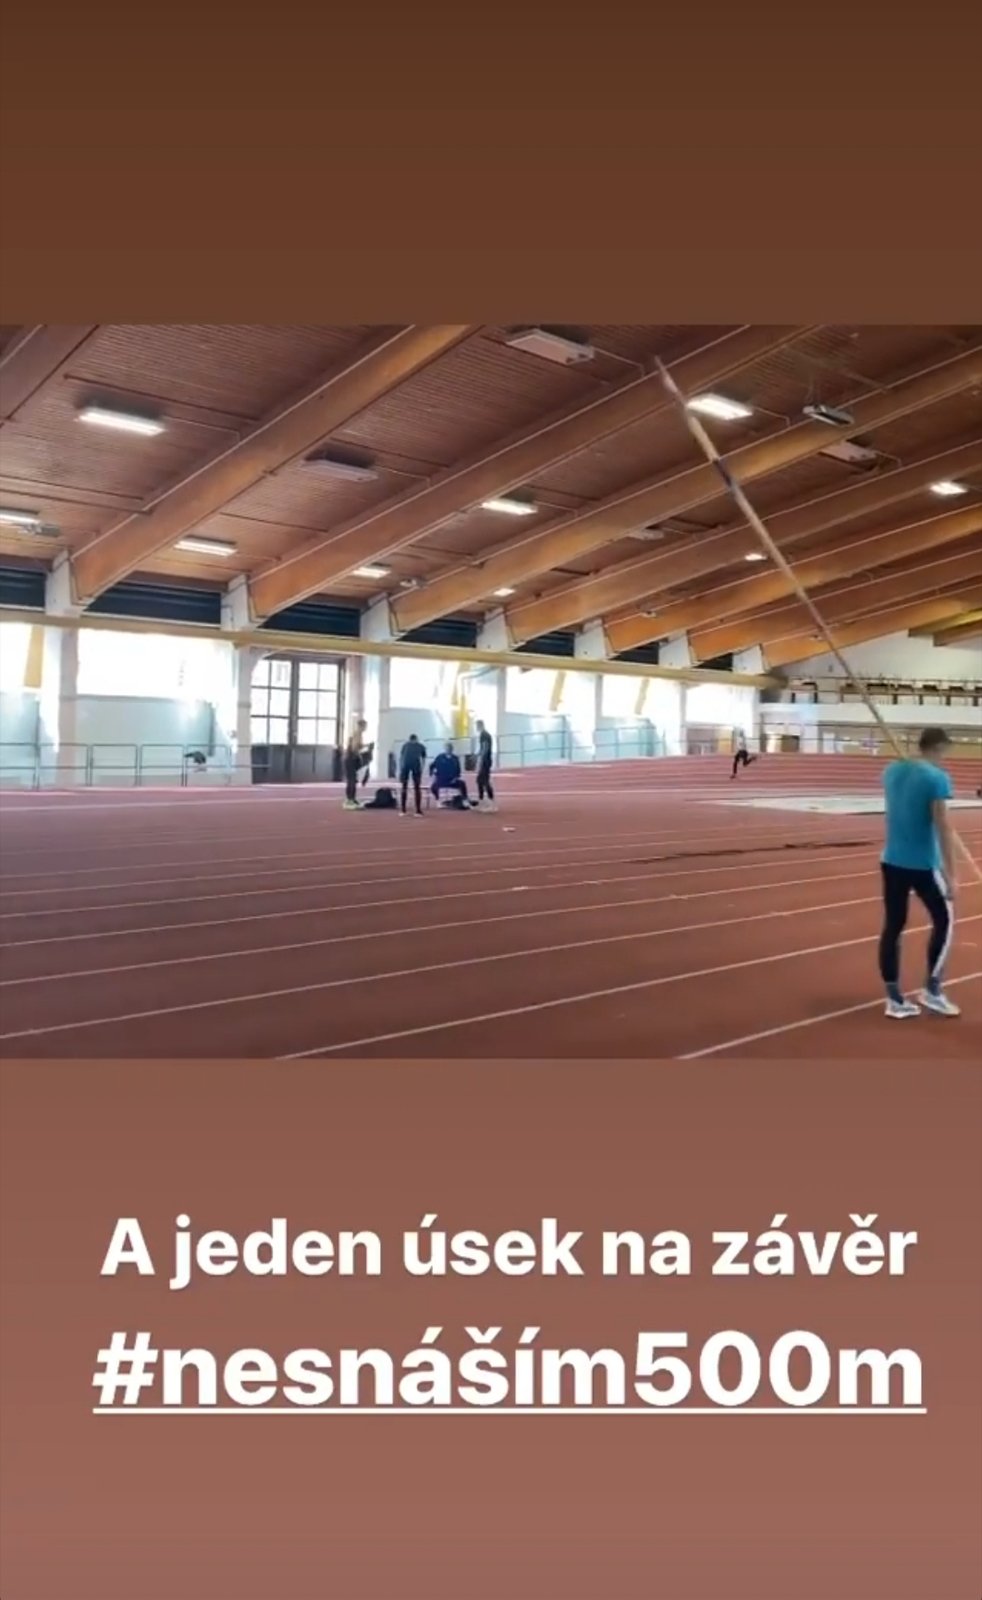 Karolína Beránková na Instagramu ukázala, jak vypadá její den